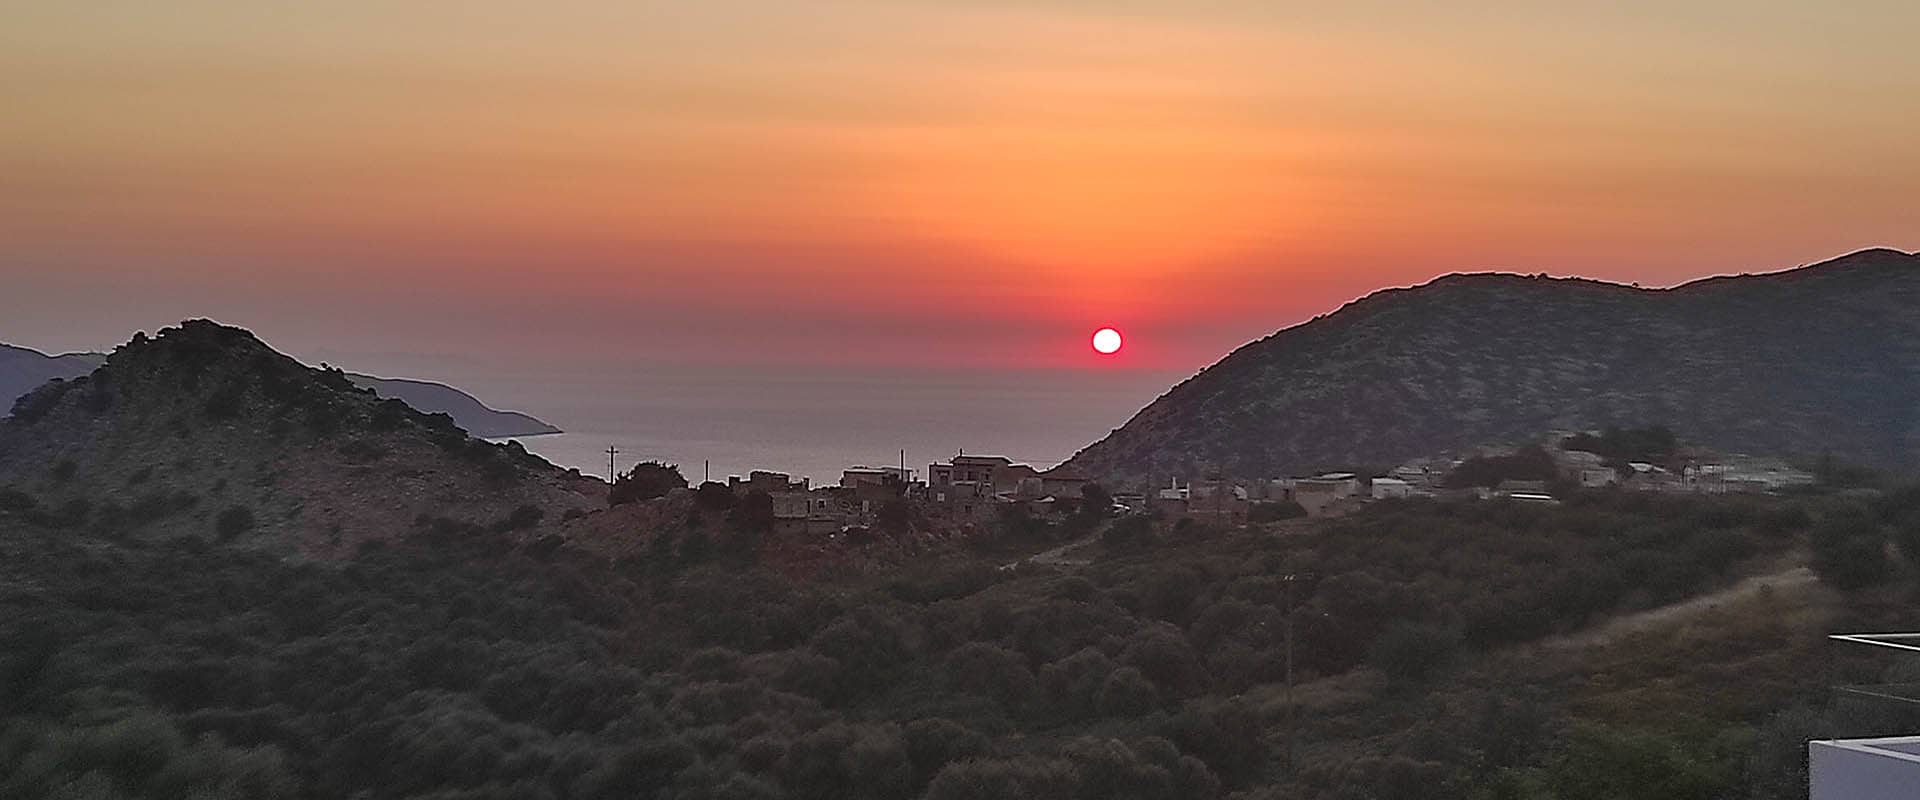 Sonnenuntergang auf Kreta Griechenland